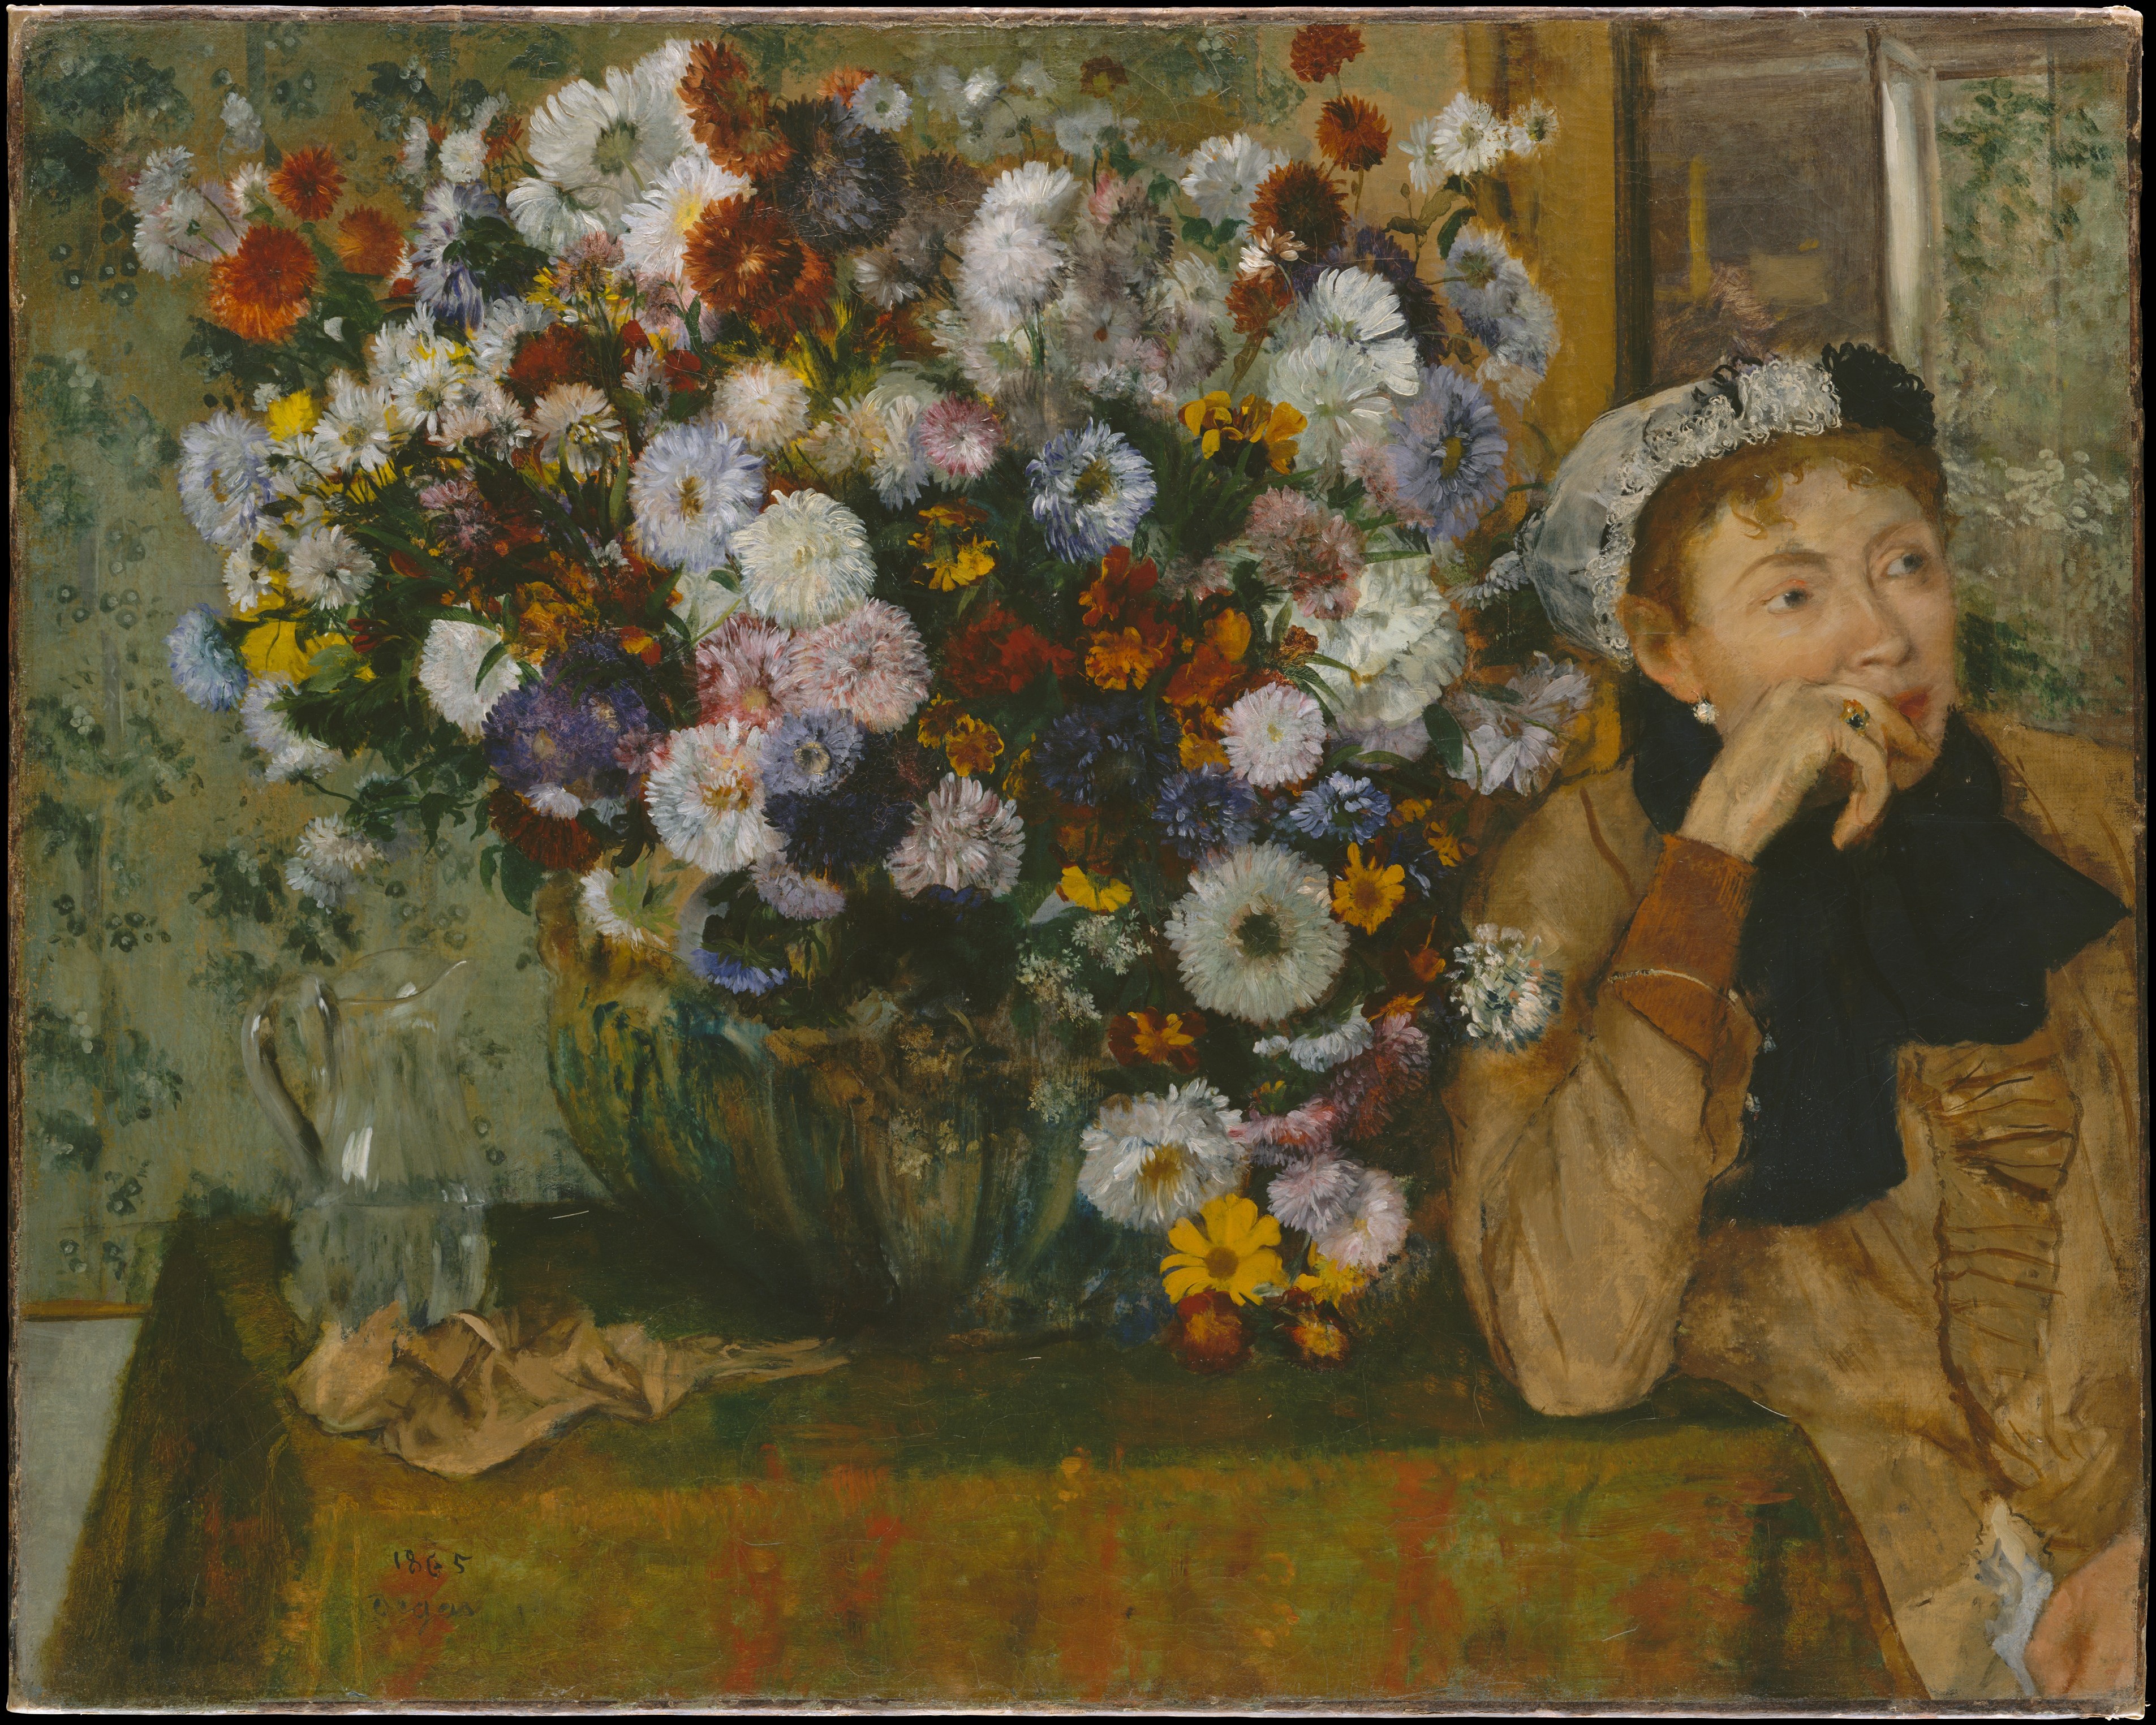 फूलों के गुलदस्ते के बगल में एक महिला बैठी (मैडम पॉल वेलपिनकॉन?) by Edgar Degas - १८६५  - ७३.७ x ९२.७ सेमी  